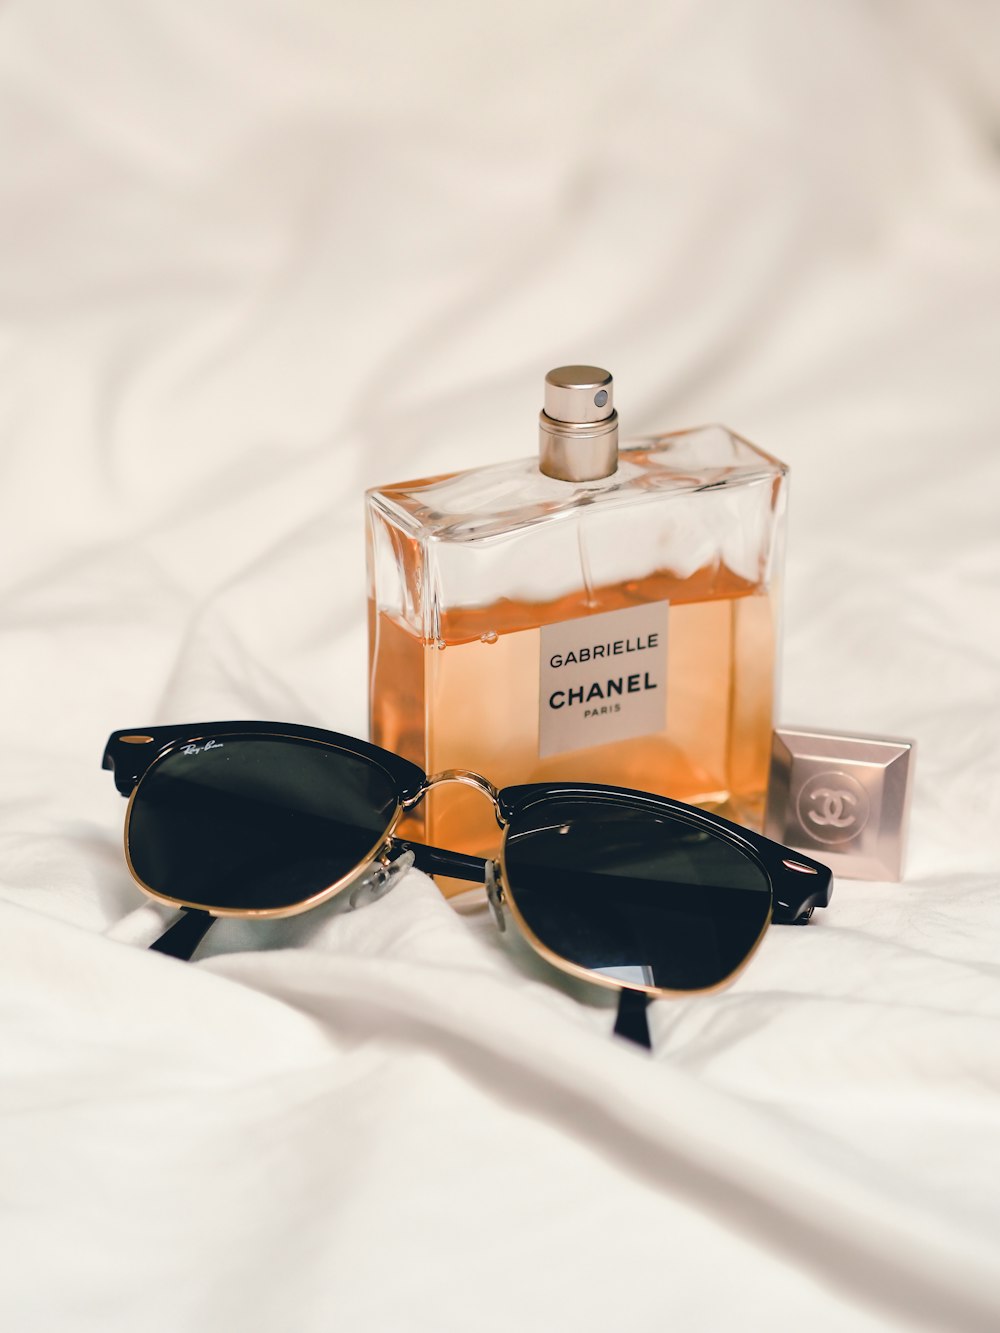 black sunglasses beside perfume bottle